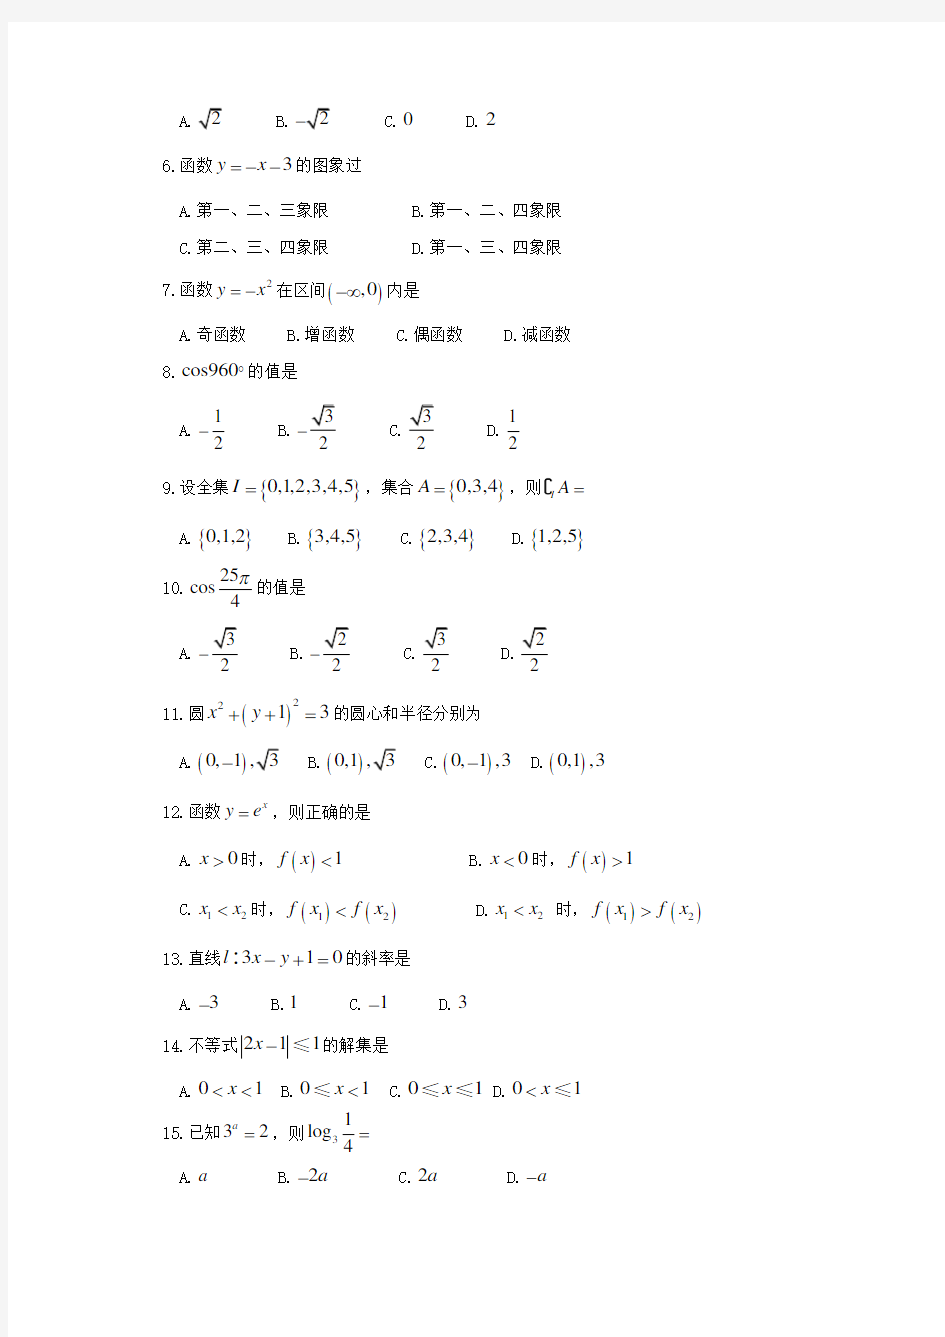 贵州省2012年中职单报高职考试试卷(数学)